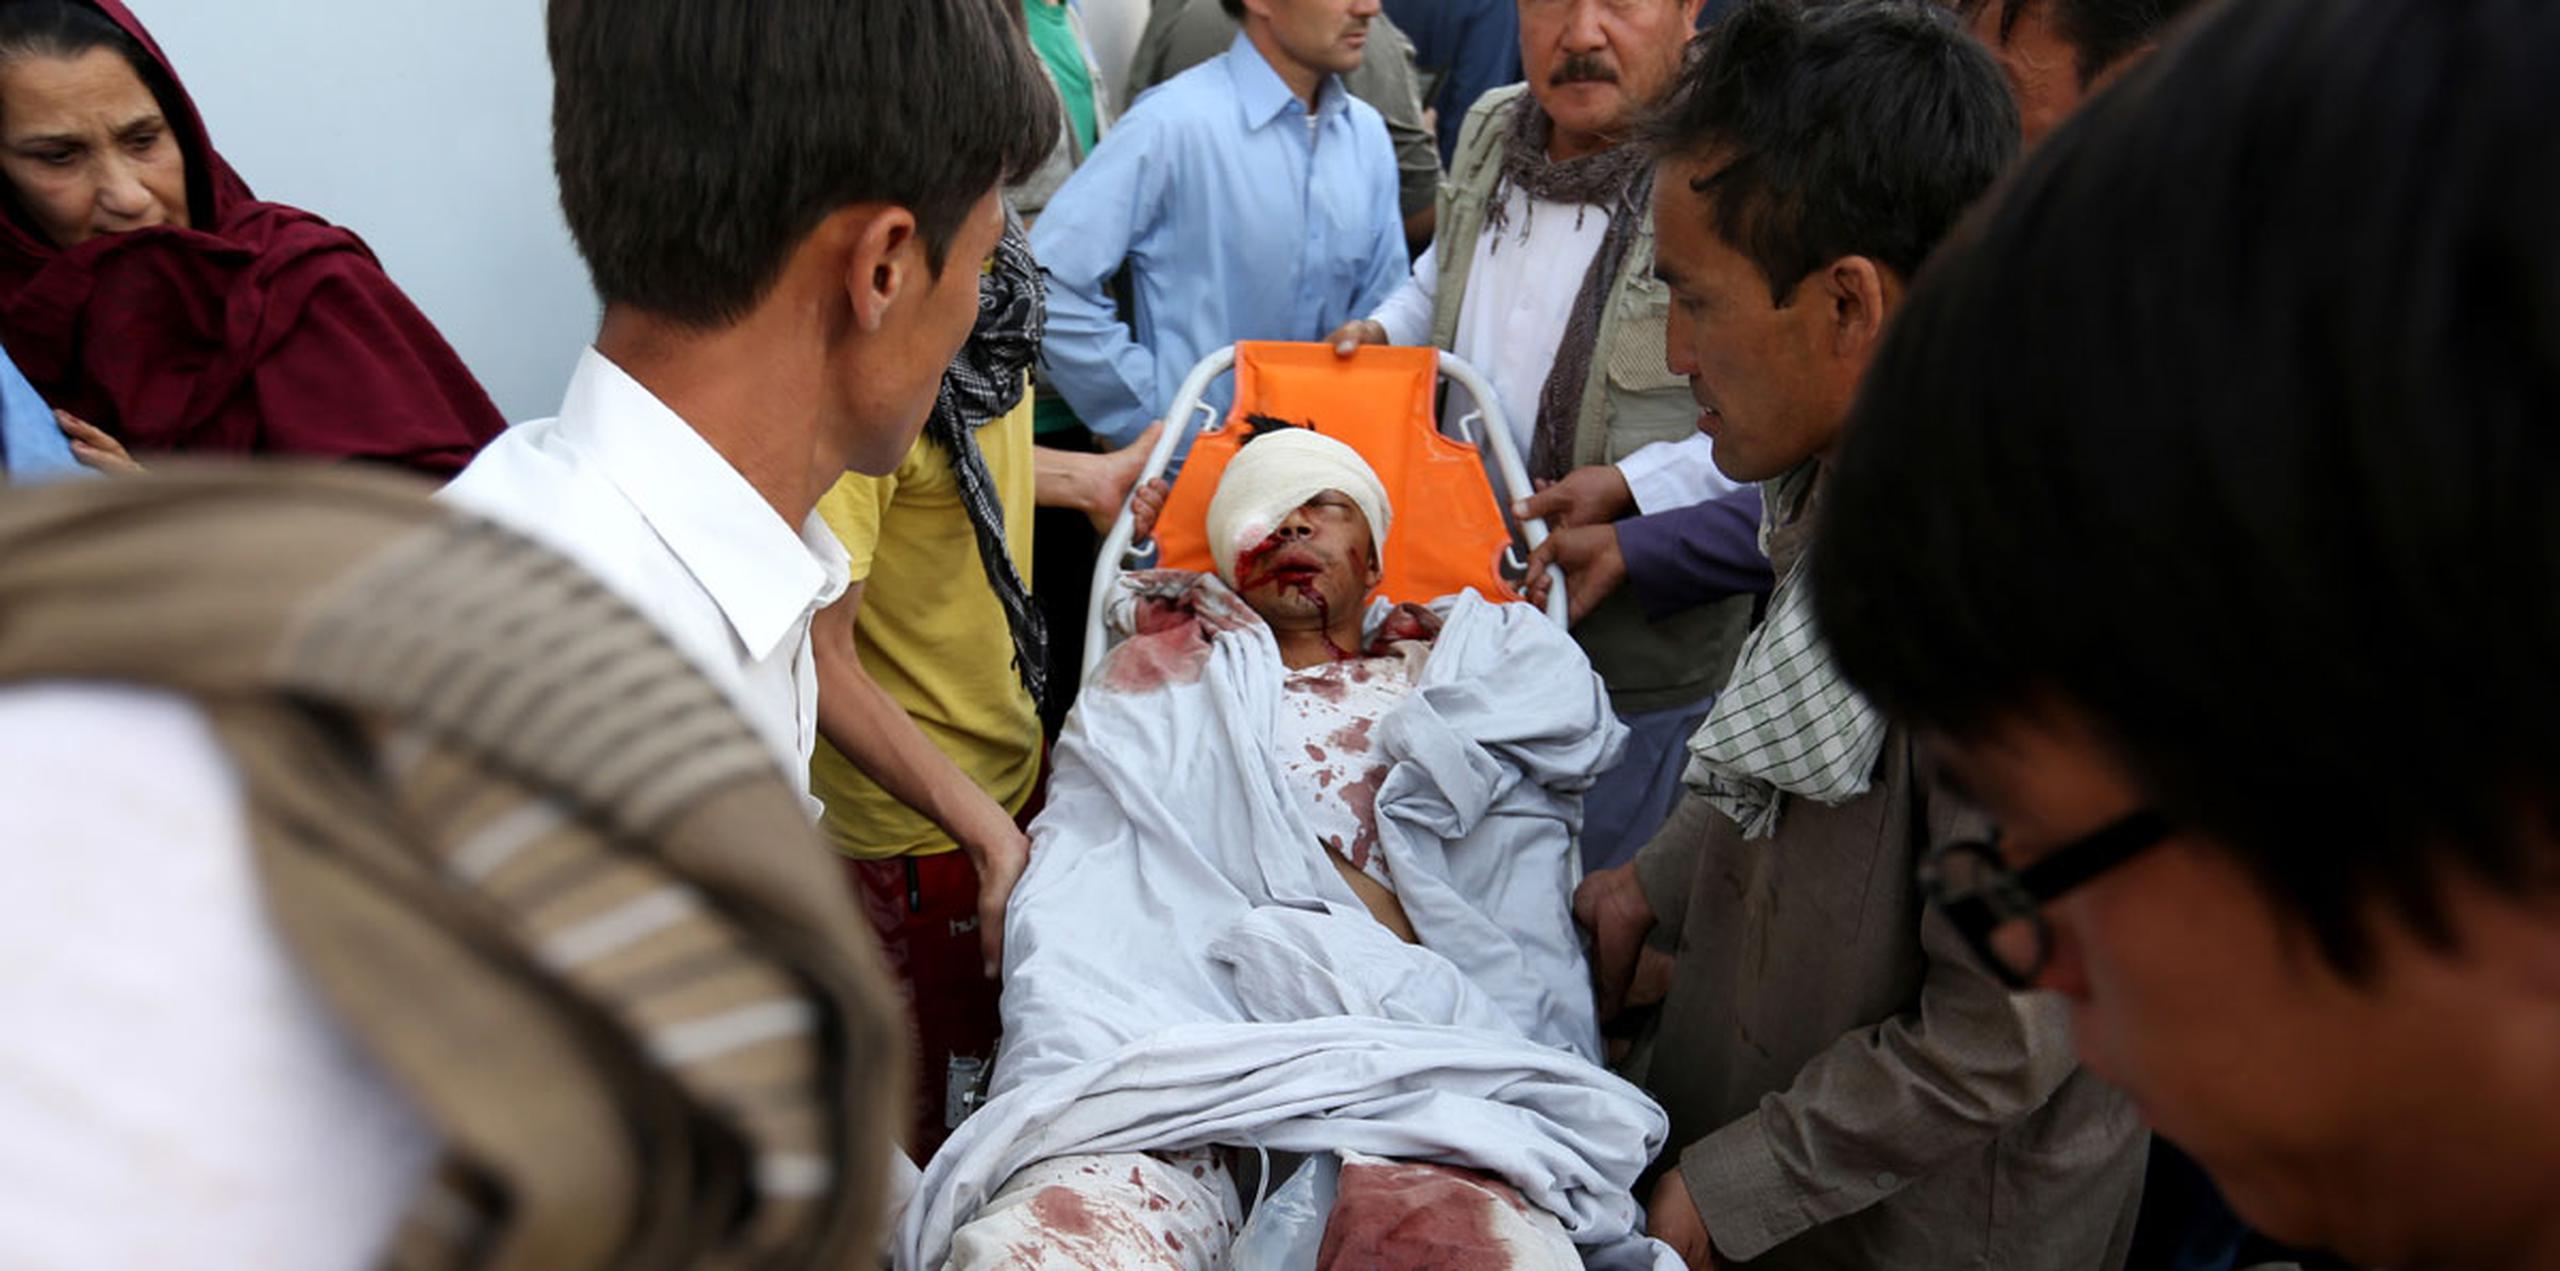 El atentado tuvo lugar durante una manifestación de miles de afganos, la mayoría hazaras, que discurría entre fuertes medidas de seguridad en protesta por un proyecto eléctrico del Gobierno que excluye a una provincia de esta minoría, de la rama islámica chií. (AP)